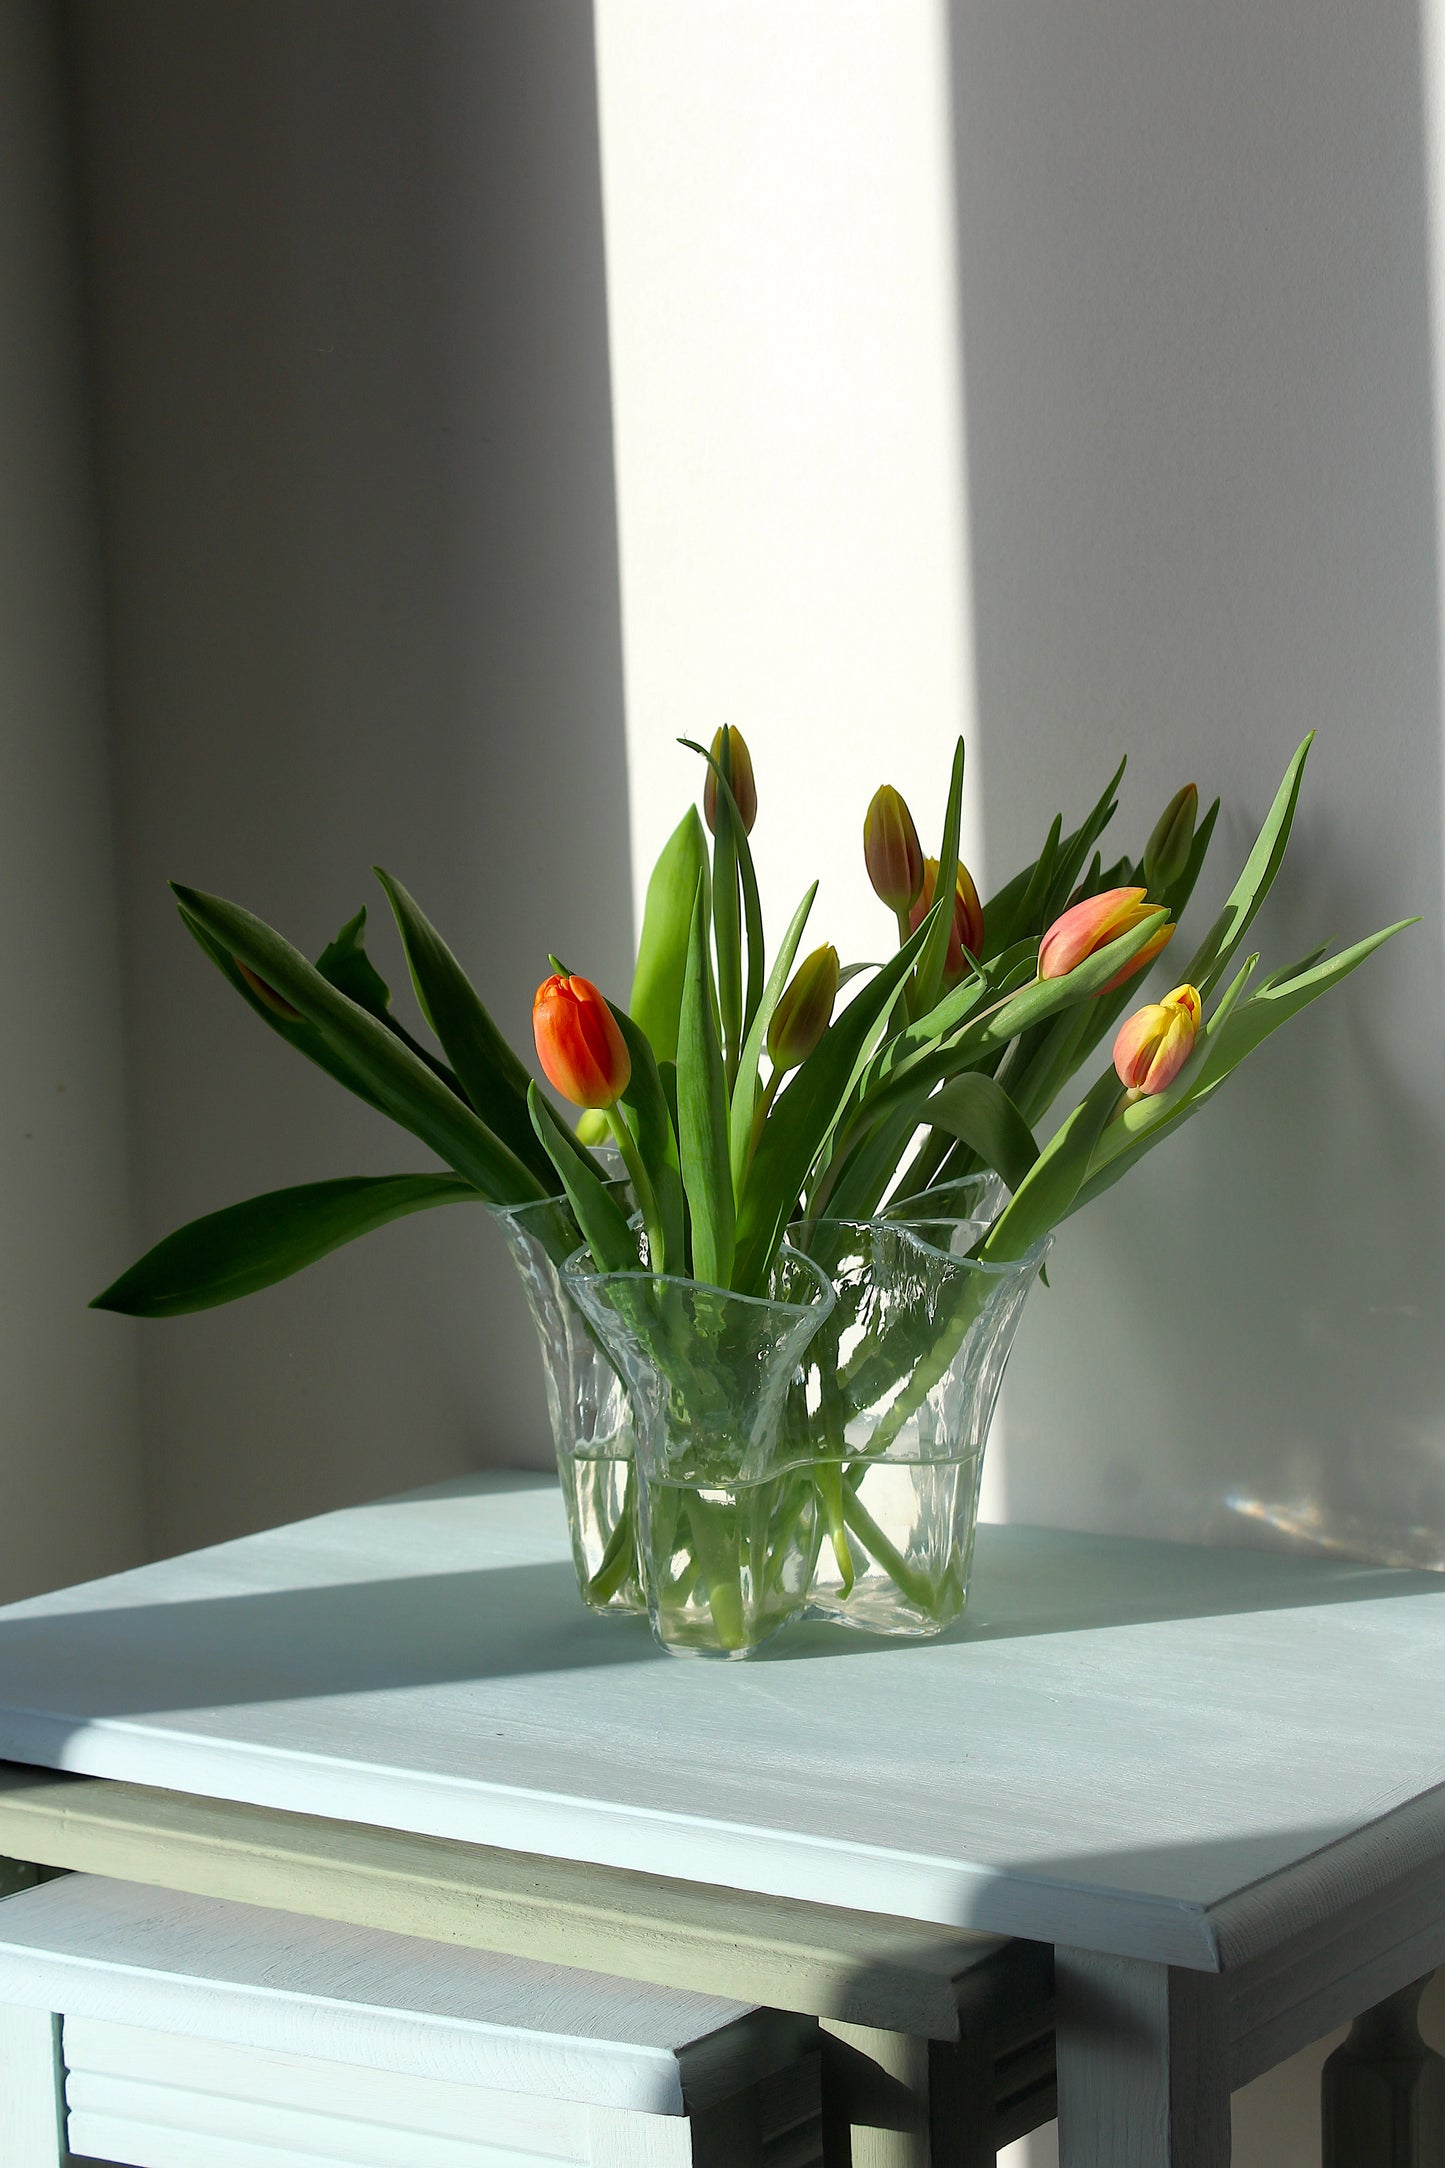 Muurla Finland - Tulip vase